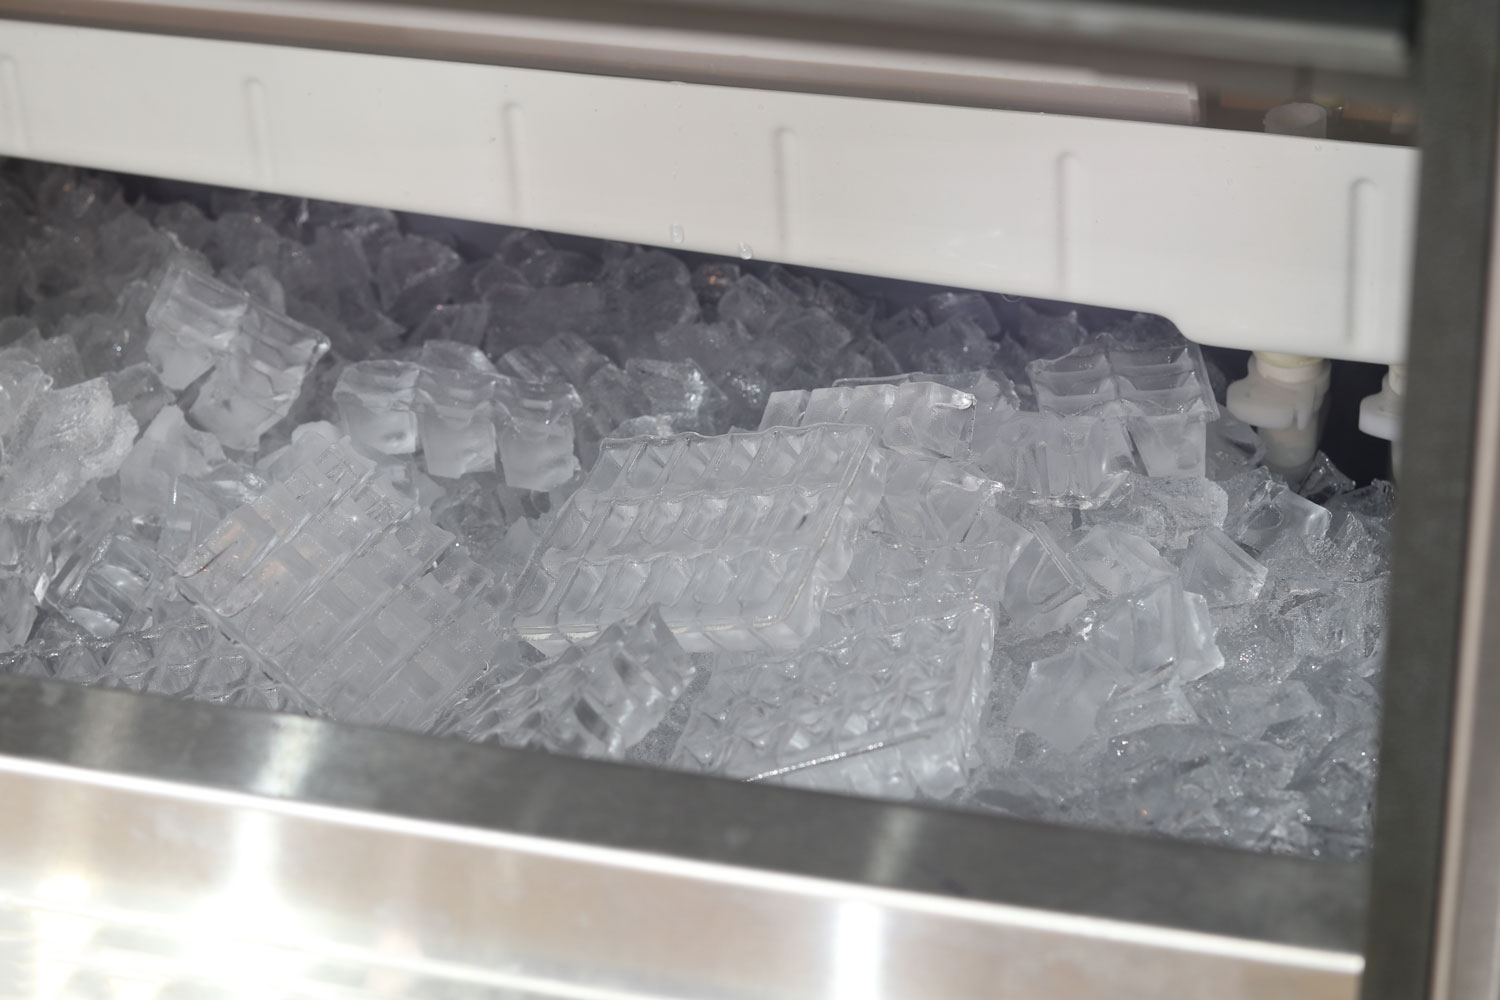 立方体在制冰机冰块